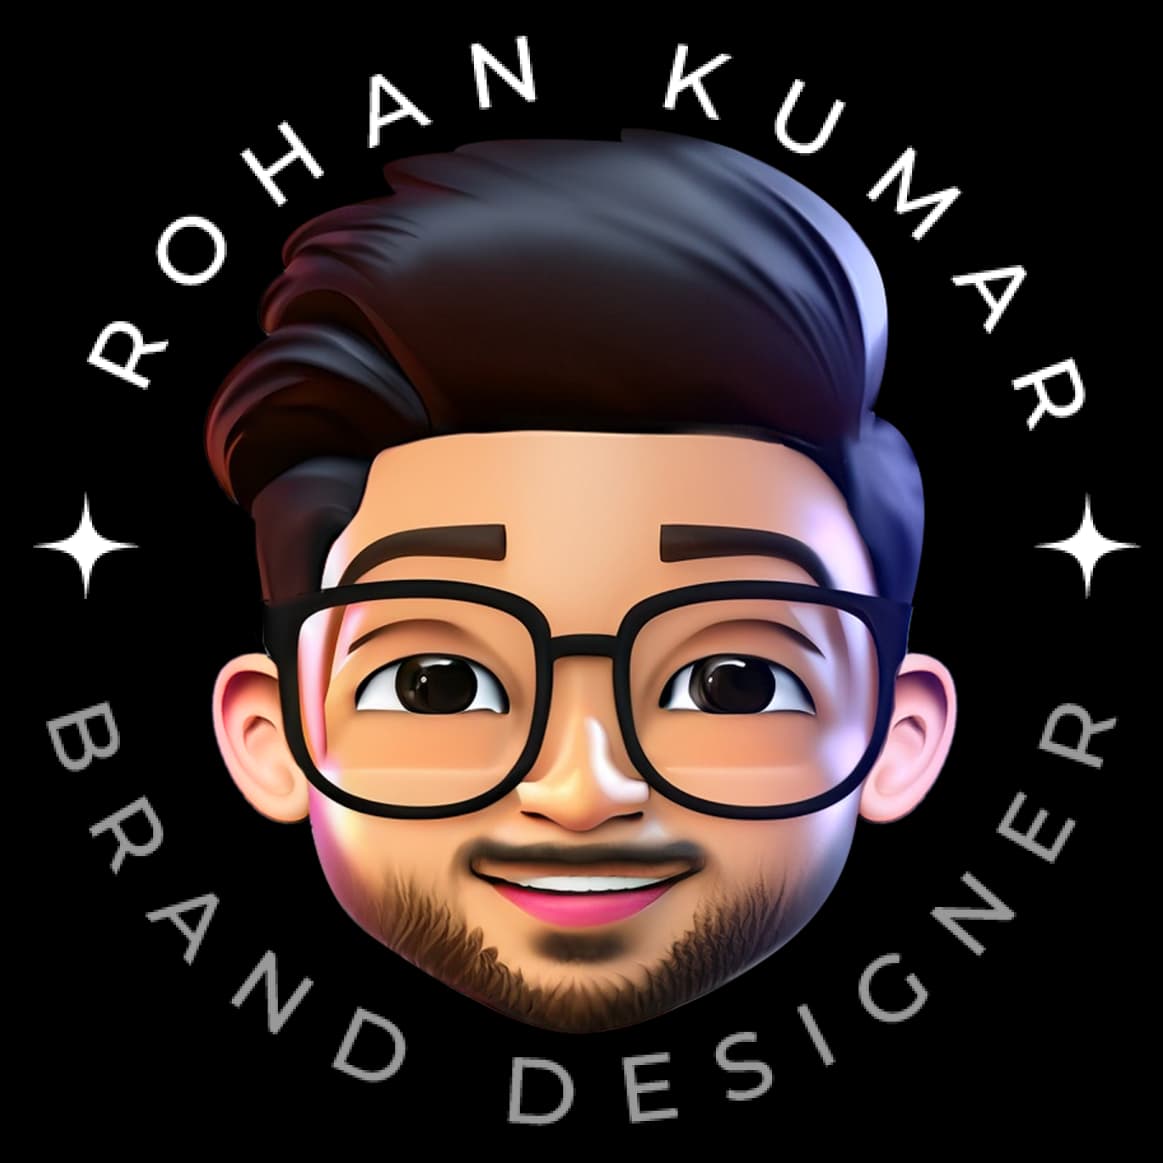 Rohan Kumarのプロフィール画像